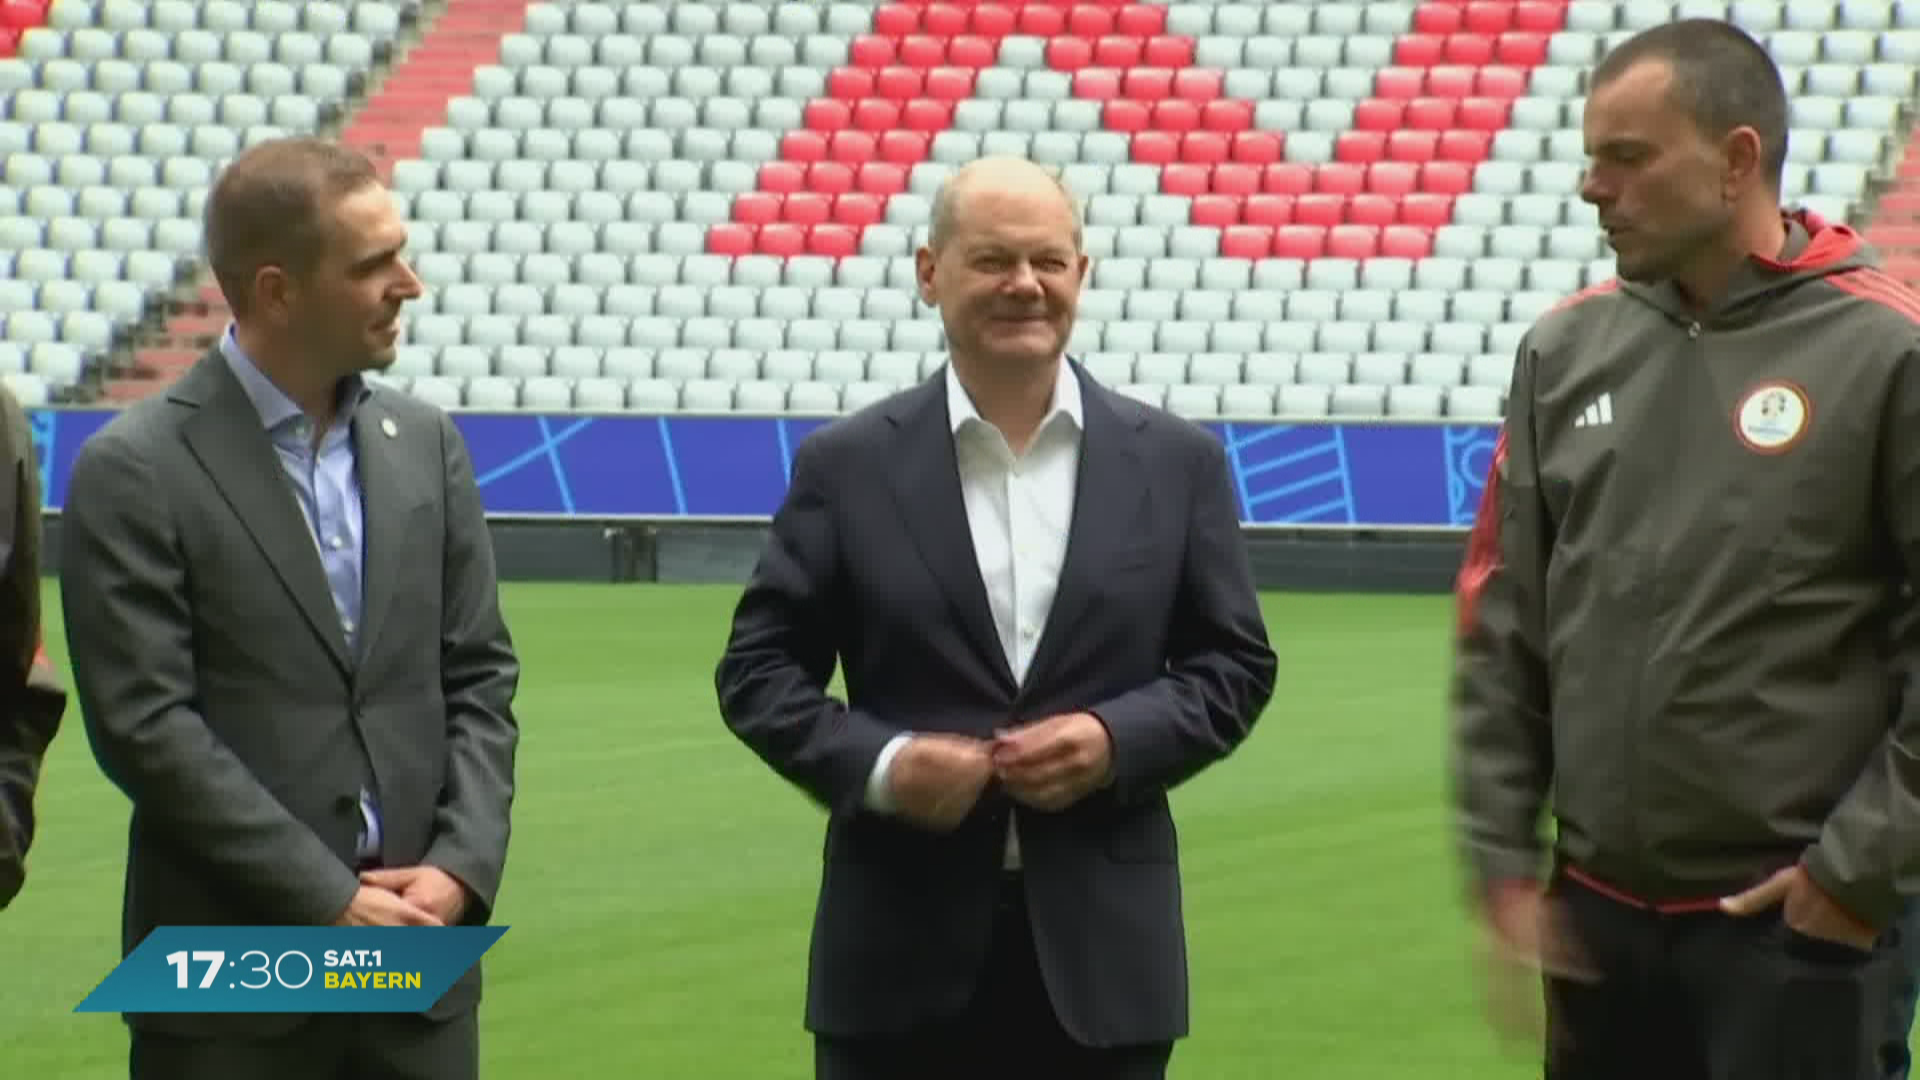 EM-Eröffnung in München: Olaf Scholz besucht die Allianz Arena